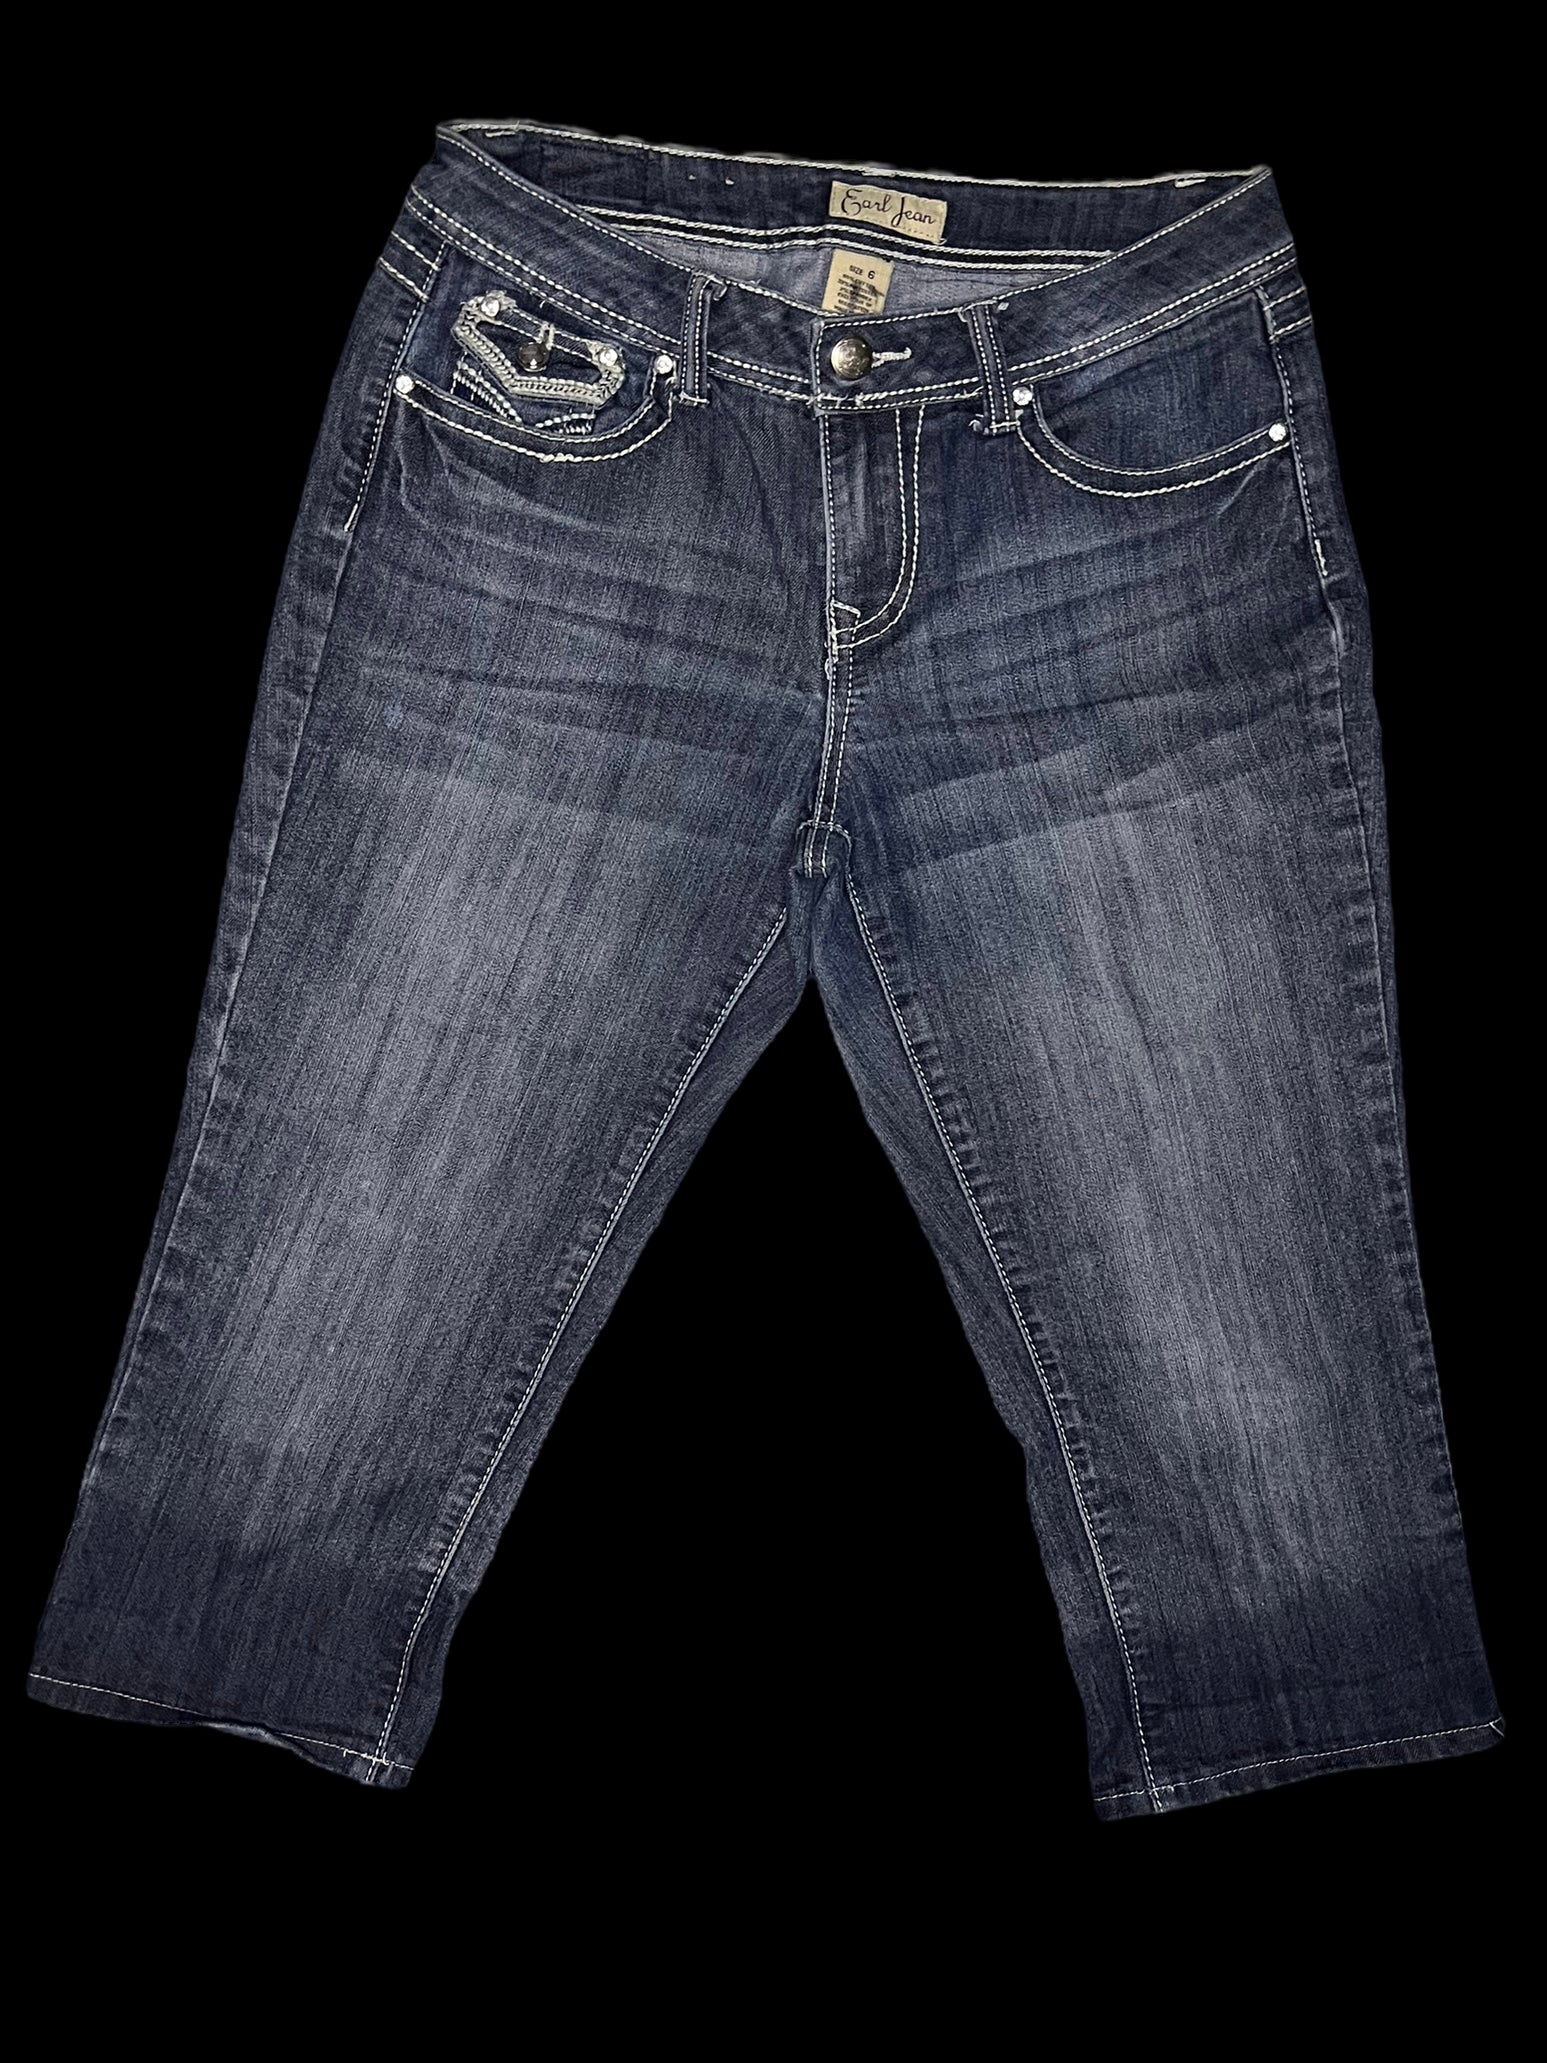 Earl Jean Blue Size 3 Denim Jeans